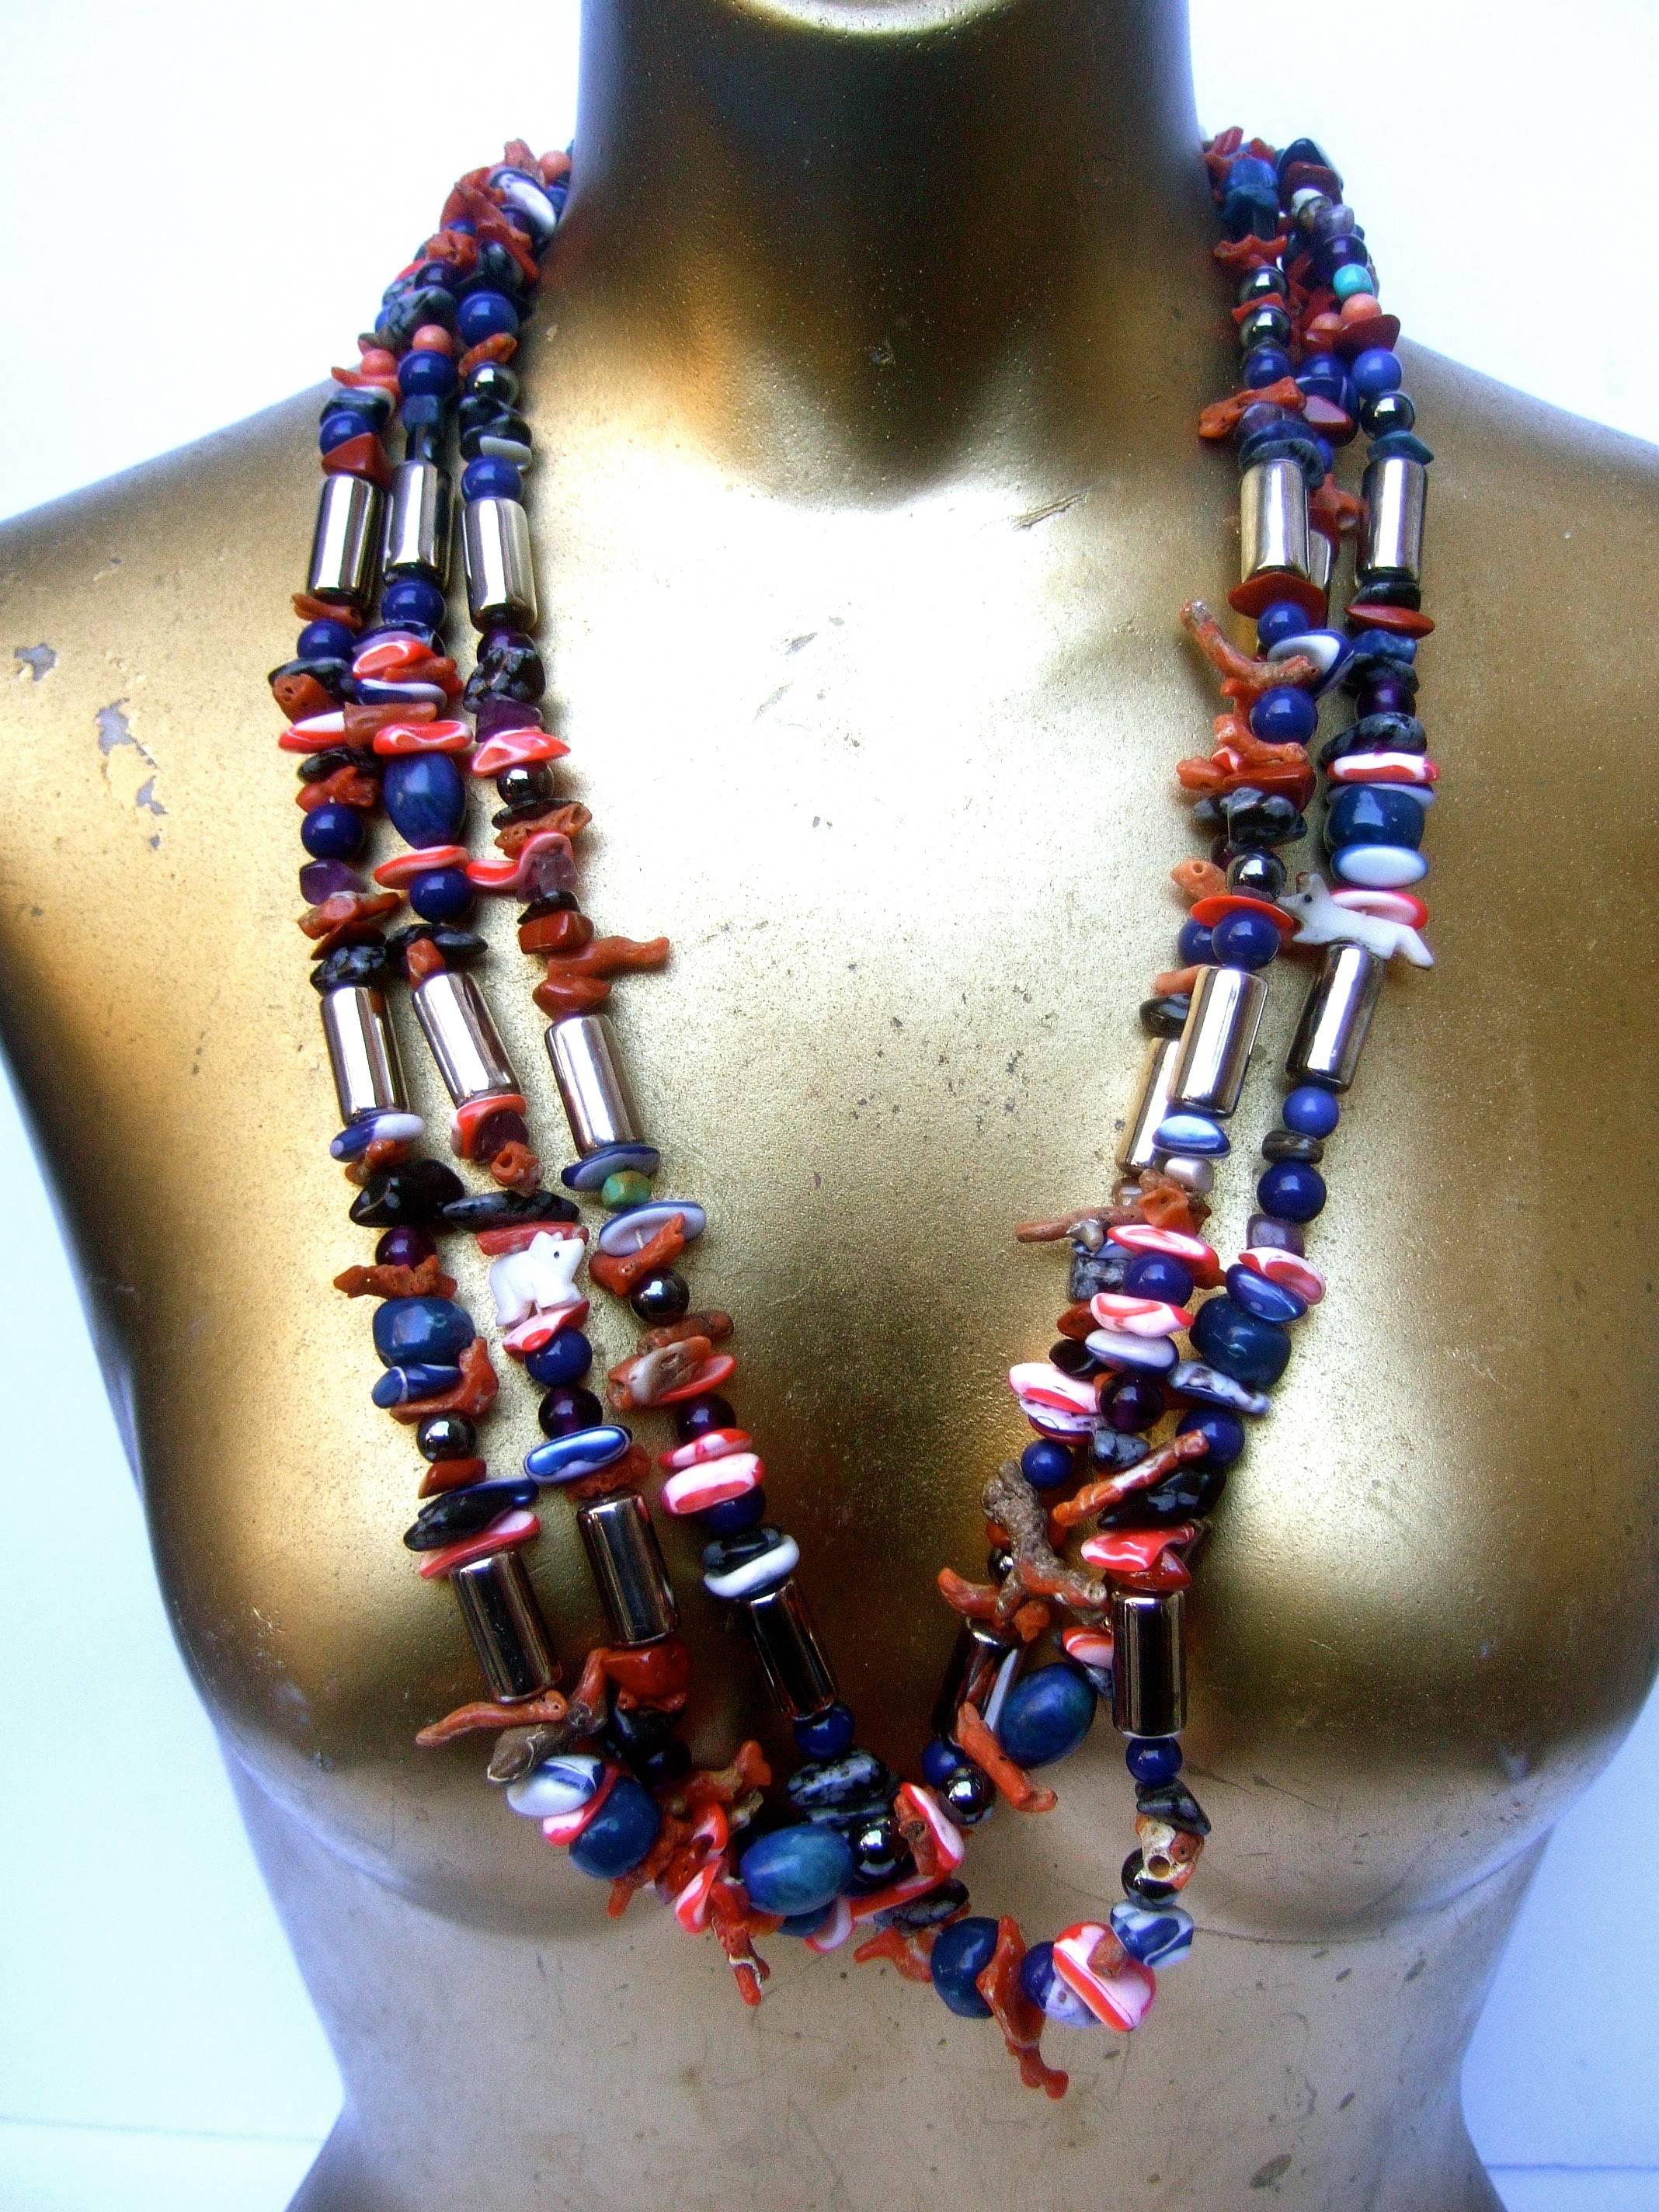 Exotische, handgefertigte Halskette aus Koralle und Lapis
Die einzigartige handgefertigte Halskette ist eine Kollektion
aus halbedlen glatten und gezackten Perlen und Steinen

Die Myriade an halbedlen Verzierungen besteht aus 
aus Lapis, Koralle,